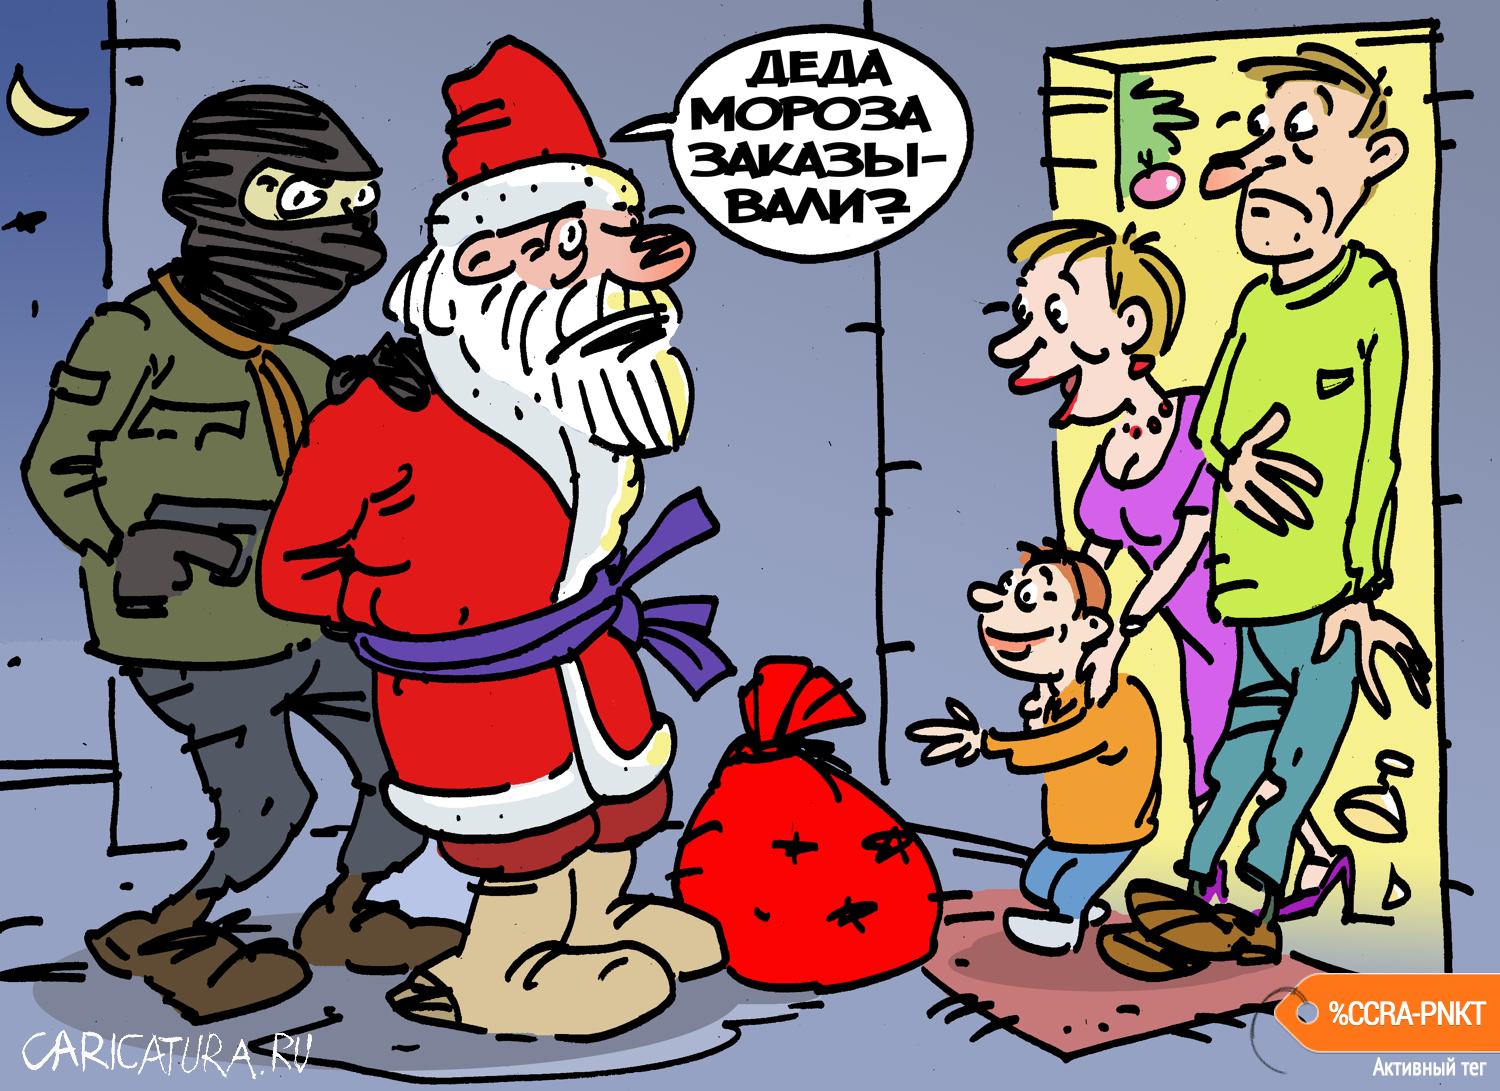 Карикатура "Деда Мороза заказывали", Вячеслав Капрельянц